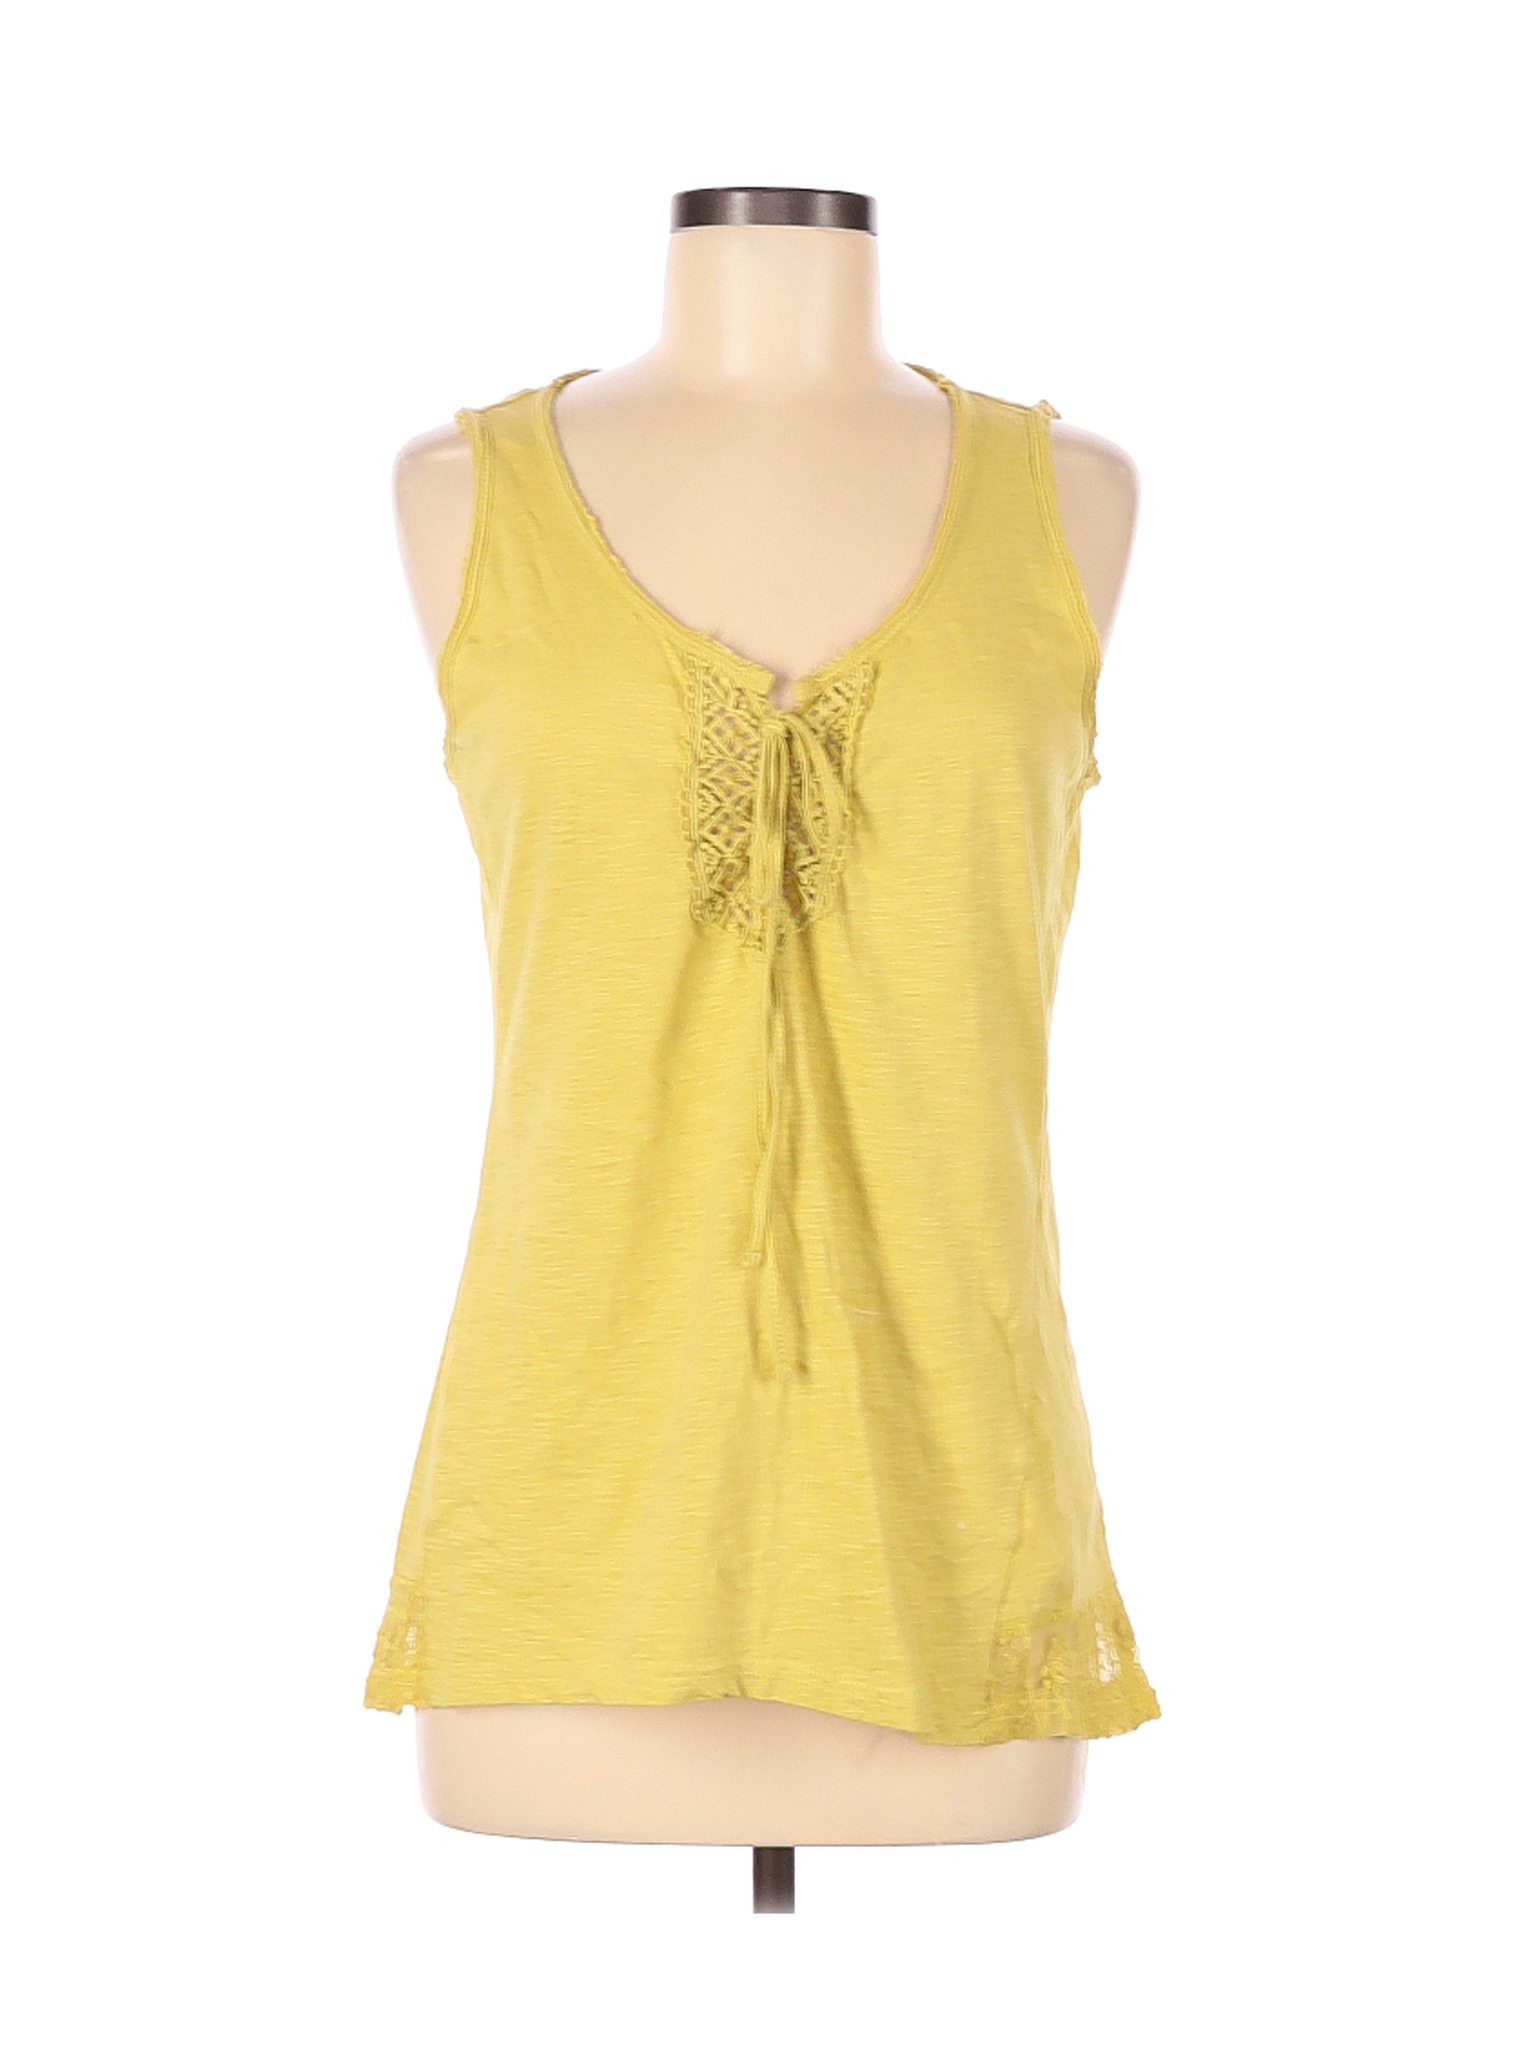 Maria Rerio Women Yellow Sleeveless Top M | eBay